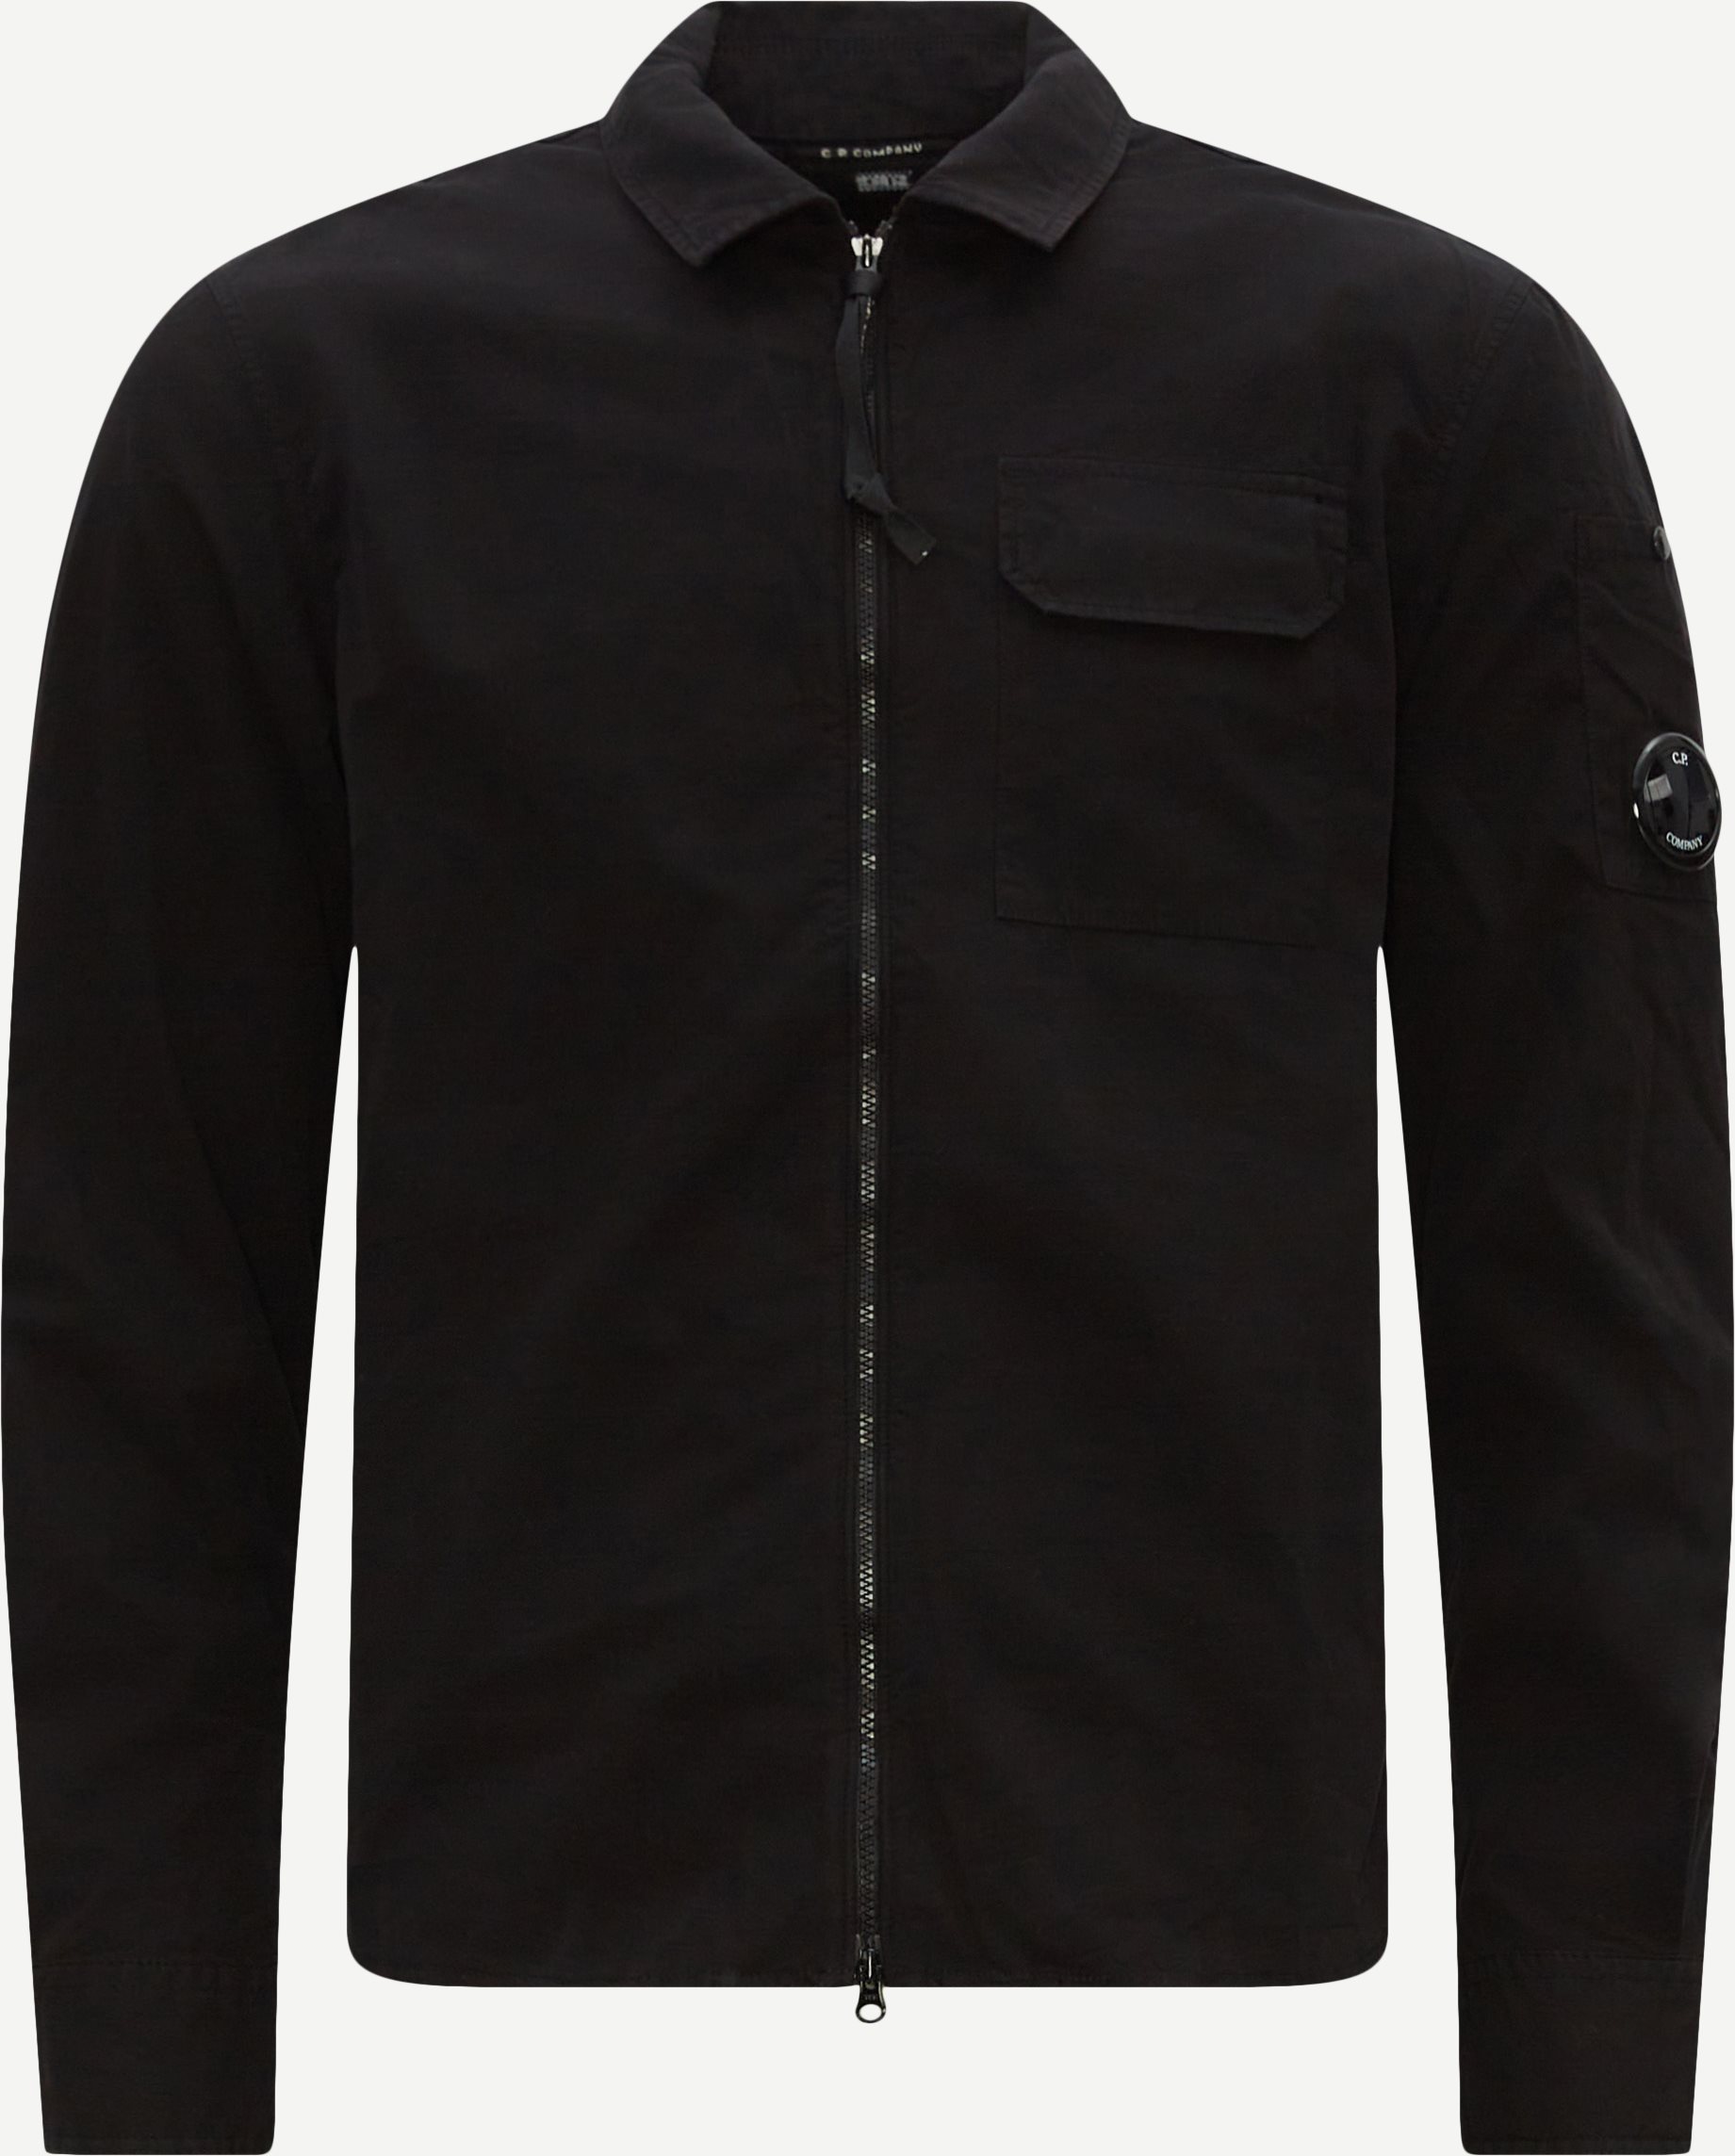 C.P. Company Shirts SH158A 2824G SS23 Black